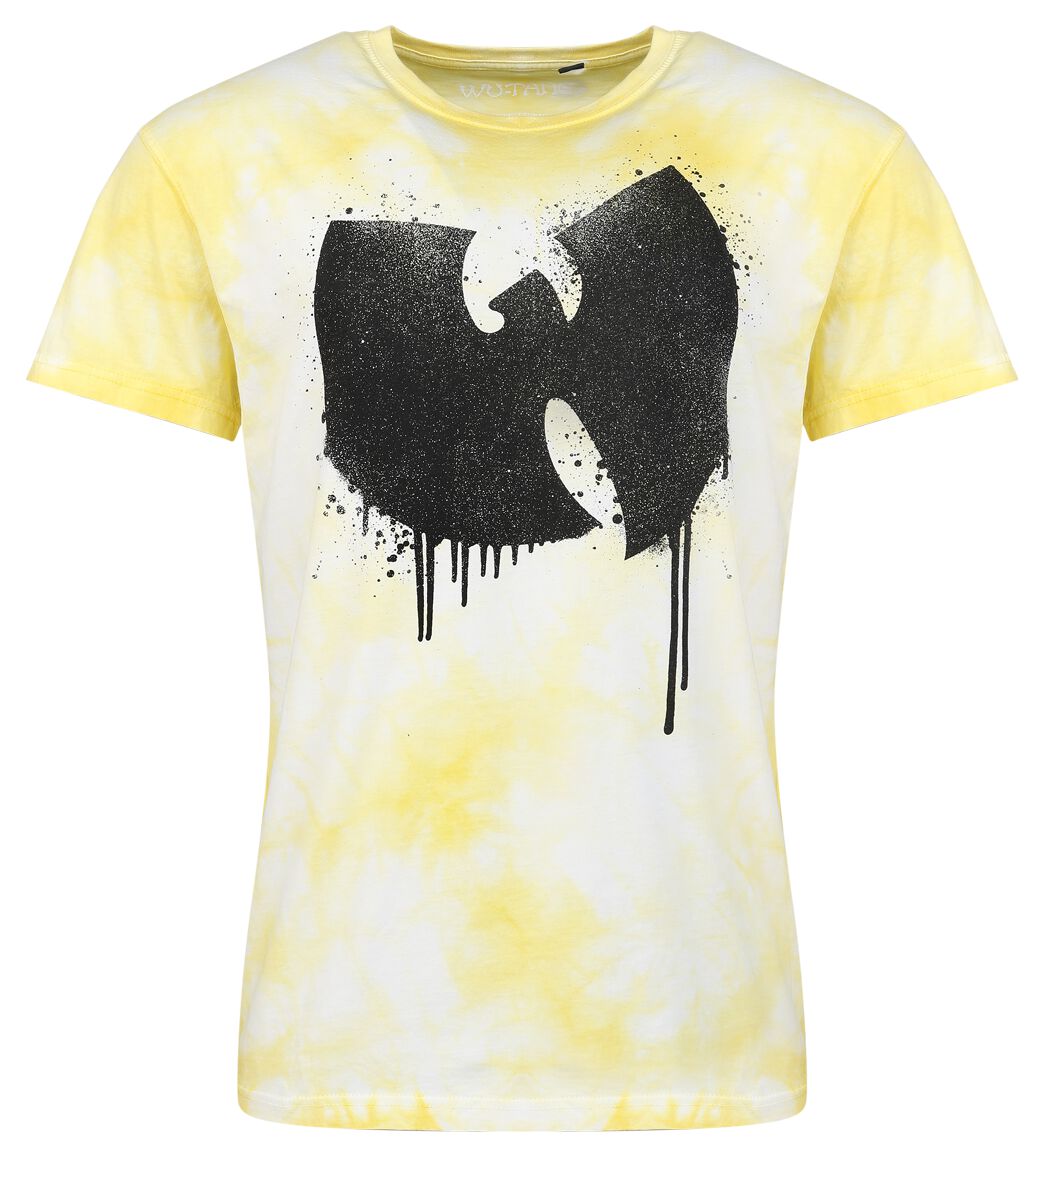 Wu-Tang Clan T-Shirt - ANTFW - S bis 3XL - für Männer - Größe XXL - gelb  - Lizenziertes Merchandise!